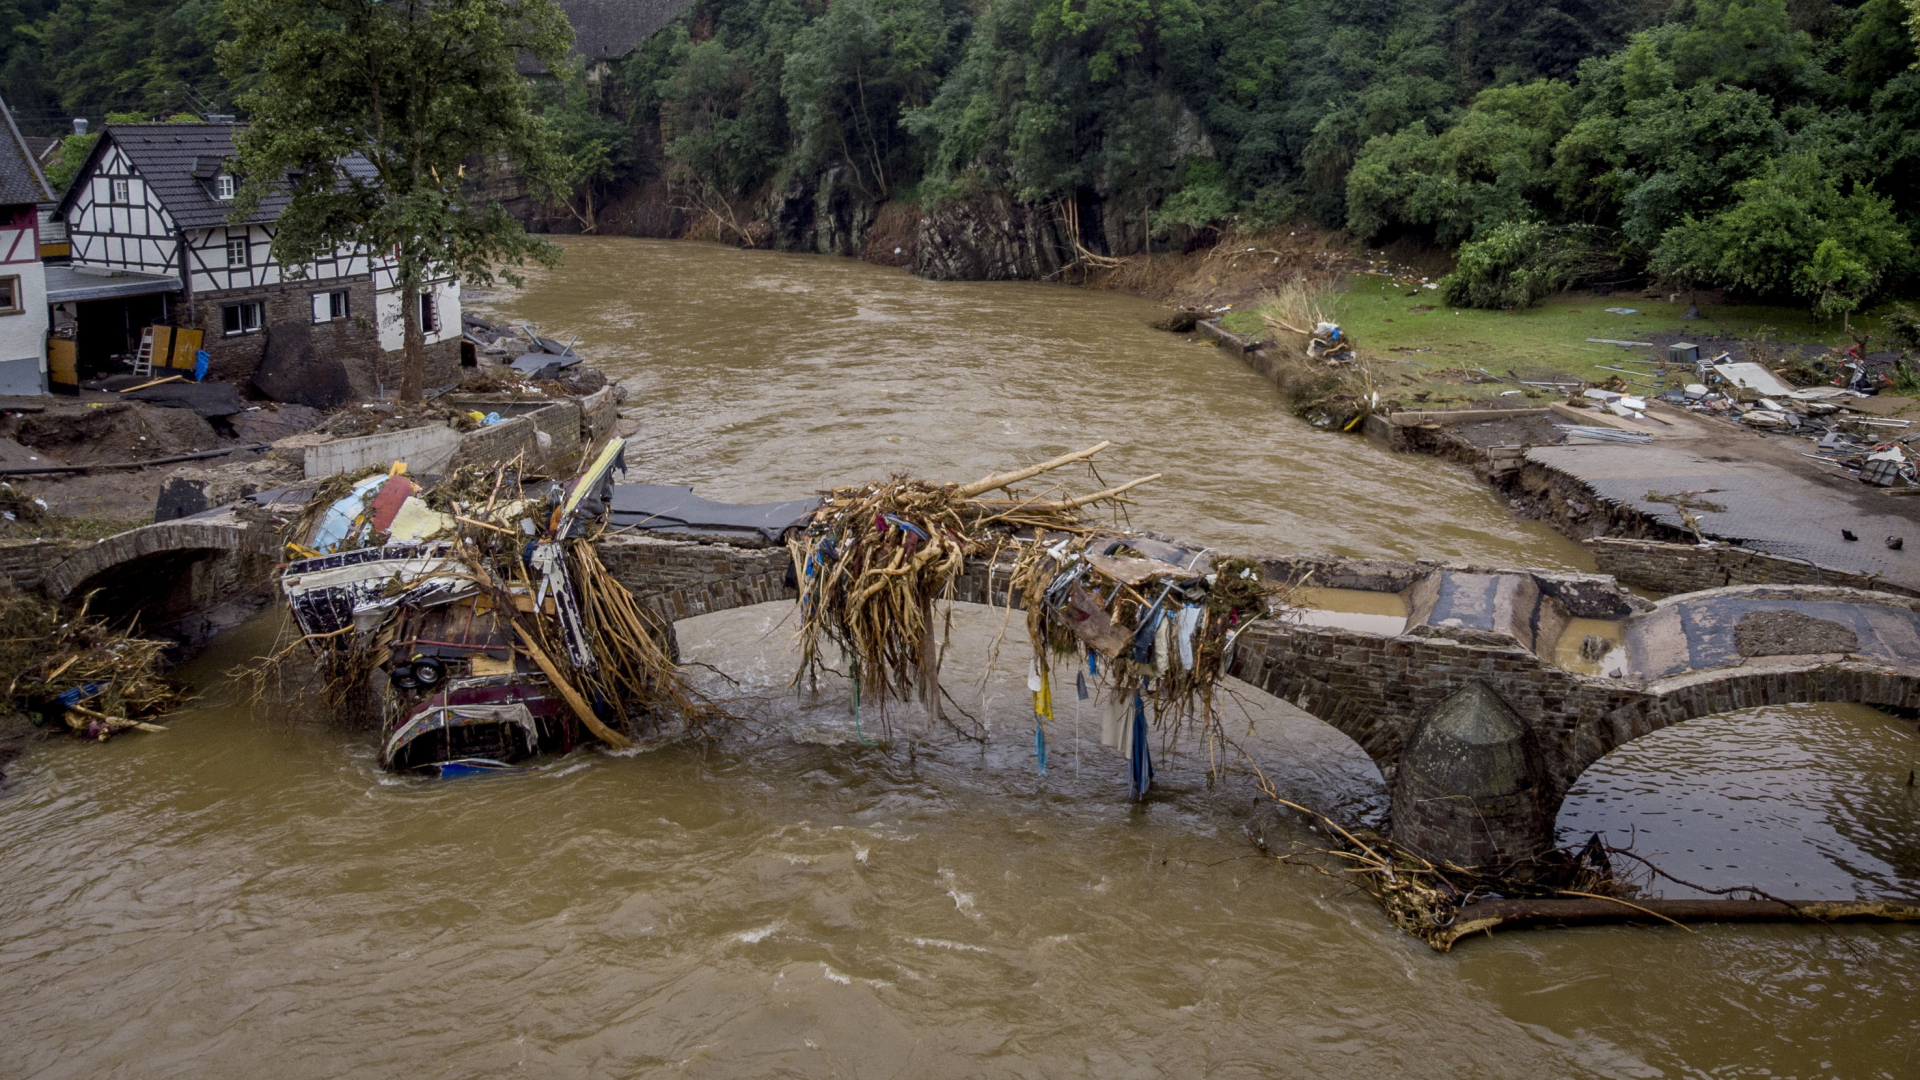 Die zerstörte Brücke in Schuld, aufgenommen zwei Tage nach dem verheerenden Hochwasser vom Juli 2021 | AP